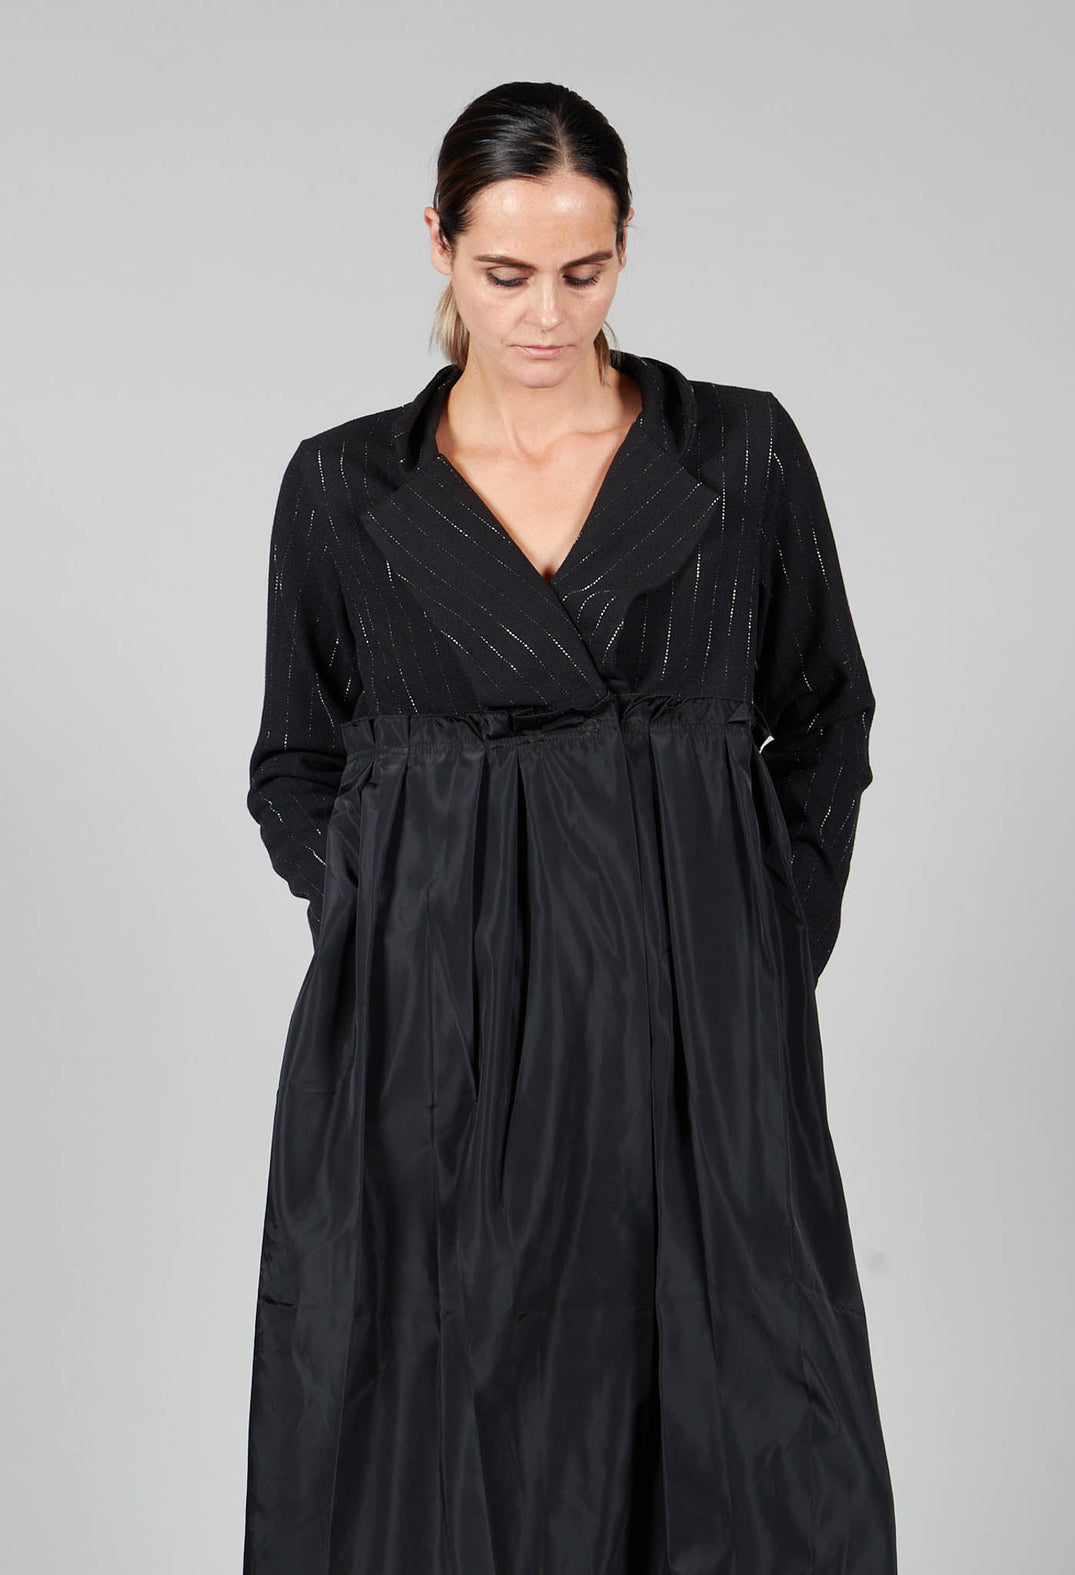 Dust Coat Pleated Dress in Black